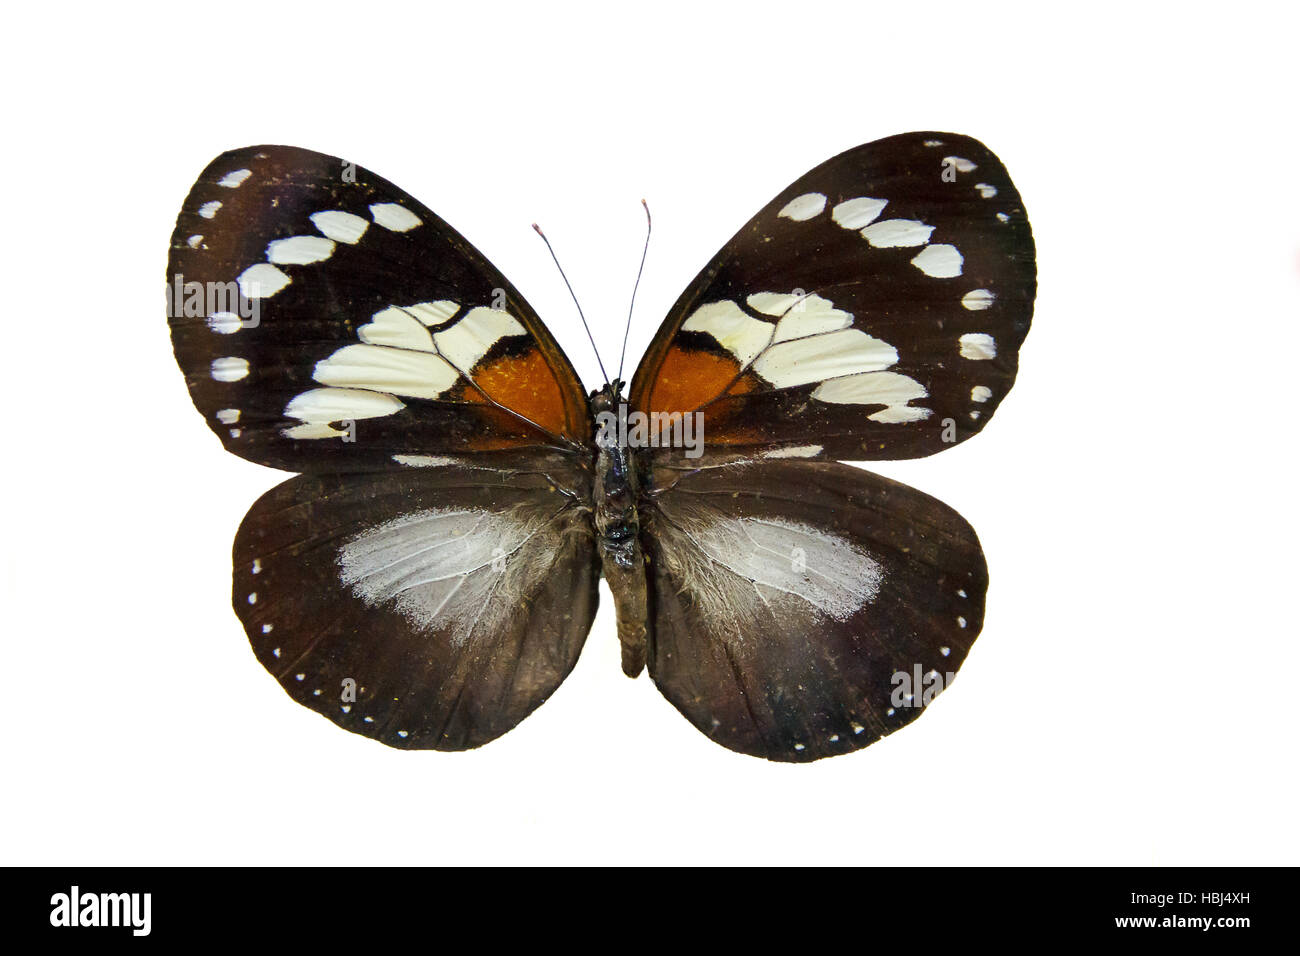 Stupenda farfalla sul piedistallo del museo Foto Stock